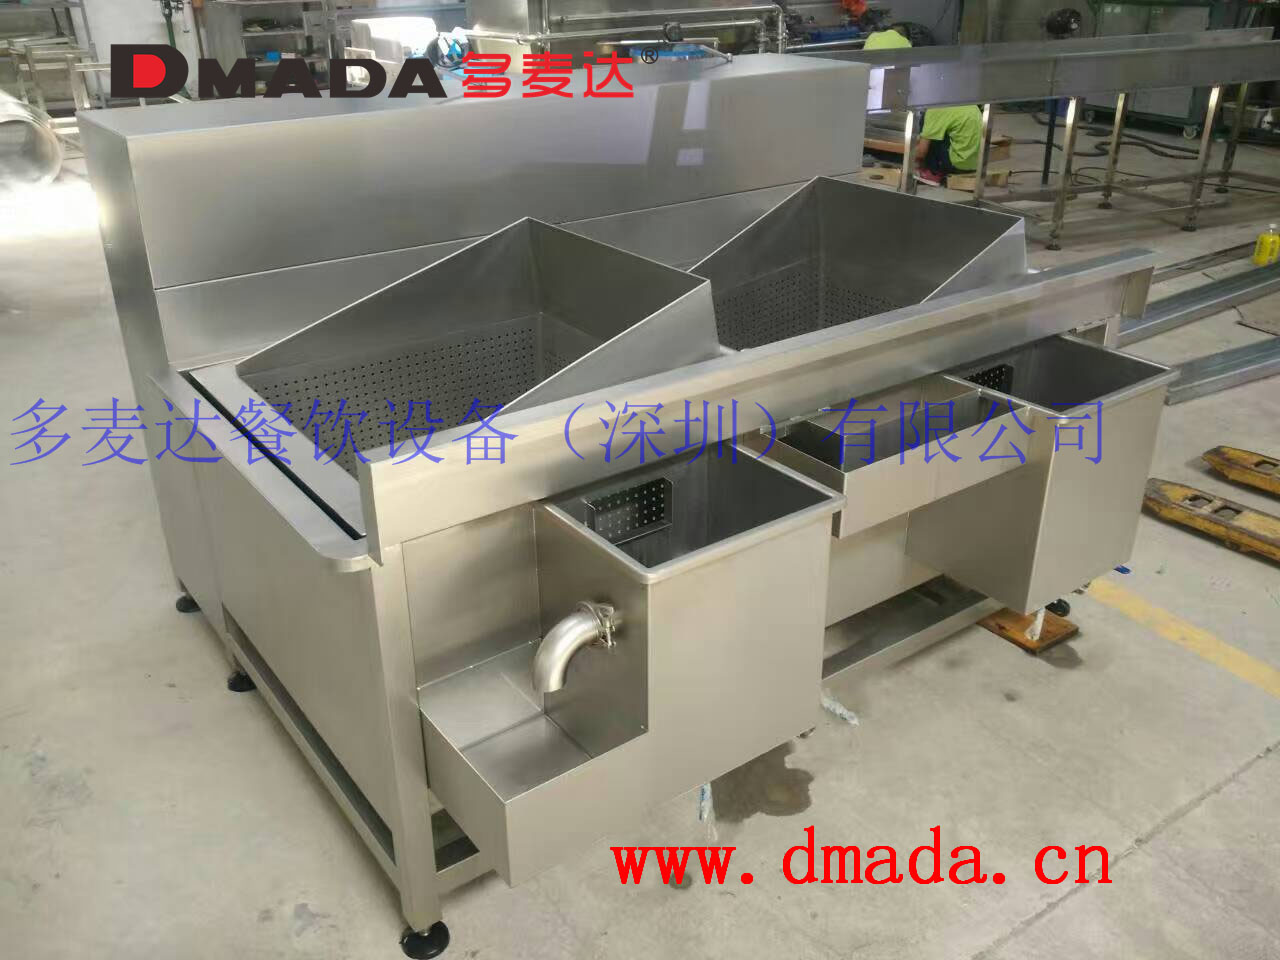 广东深圳多麦达长期供应万能蔬菜清洗机DMD-404